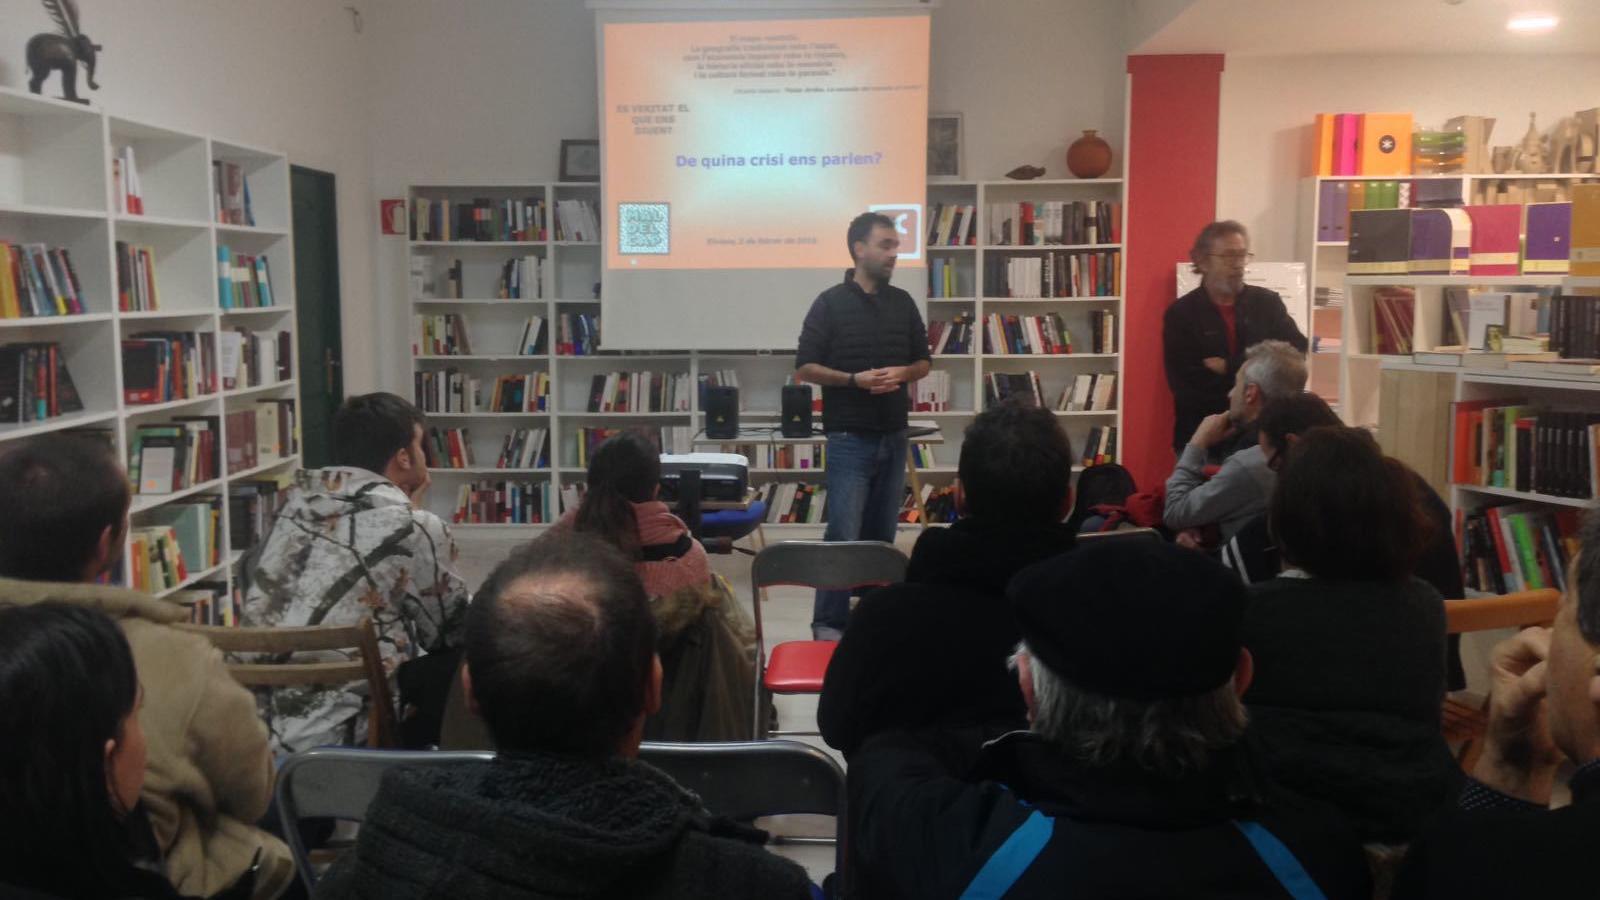 La xerrada s'ha desenvolupat a la llibreria Sa Cultural d'Eivissa. / ASSOCIACIÓ MAL DE CAP